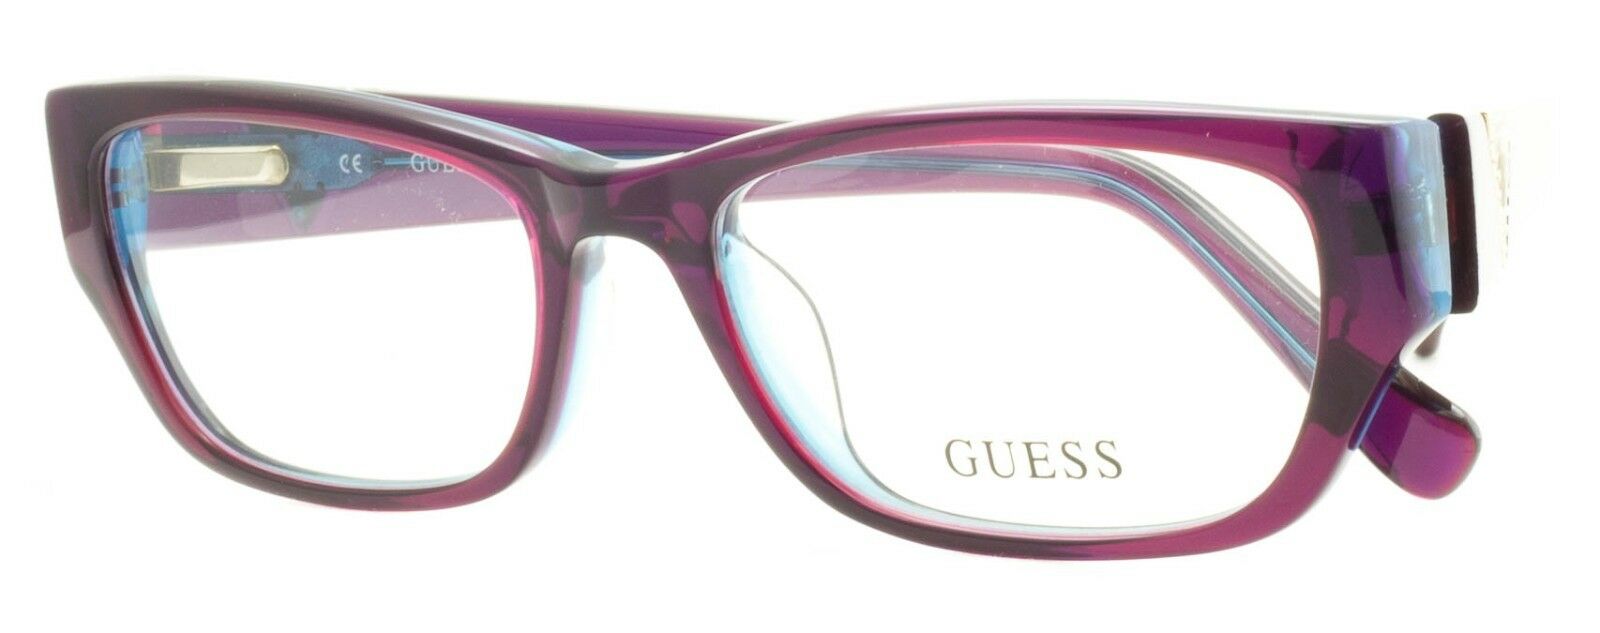 GUESS GU 2387 PURBL Eyewear FRAMES Glasses Eyeglasses RX Optical BNIB - TRUSTED